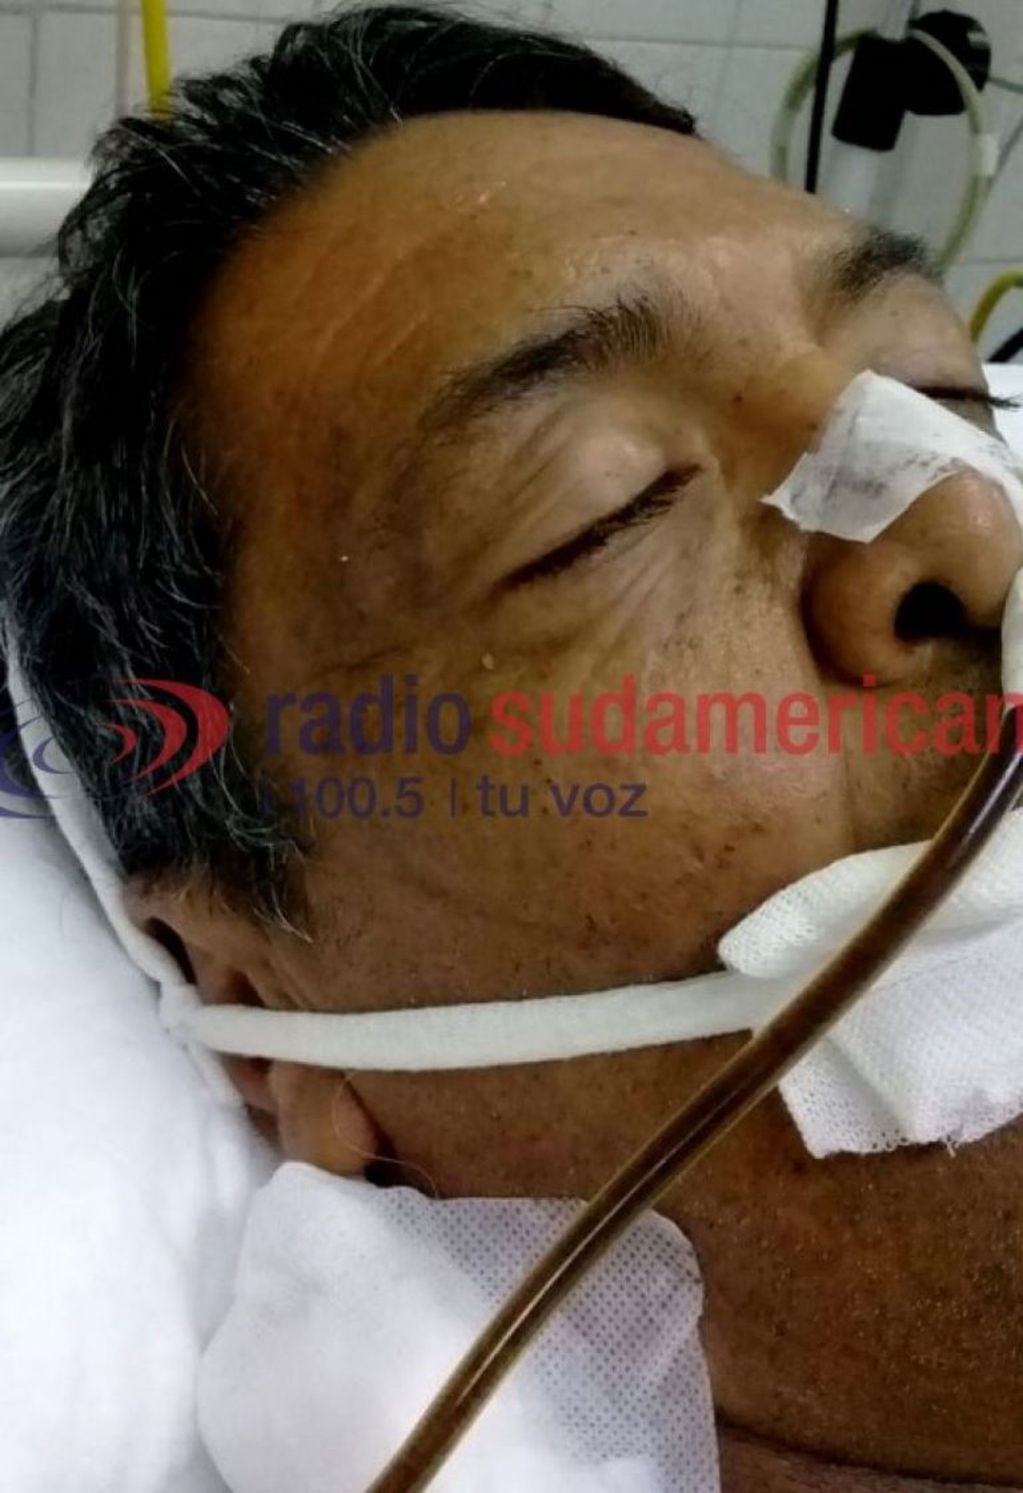 El hombre sigue inconsciente (Radio Sudamericana).